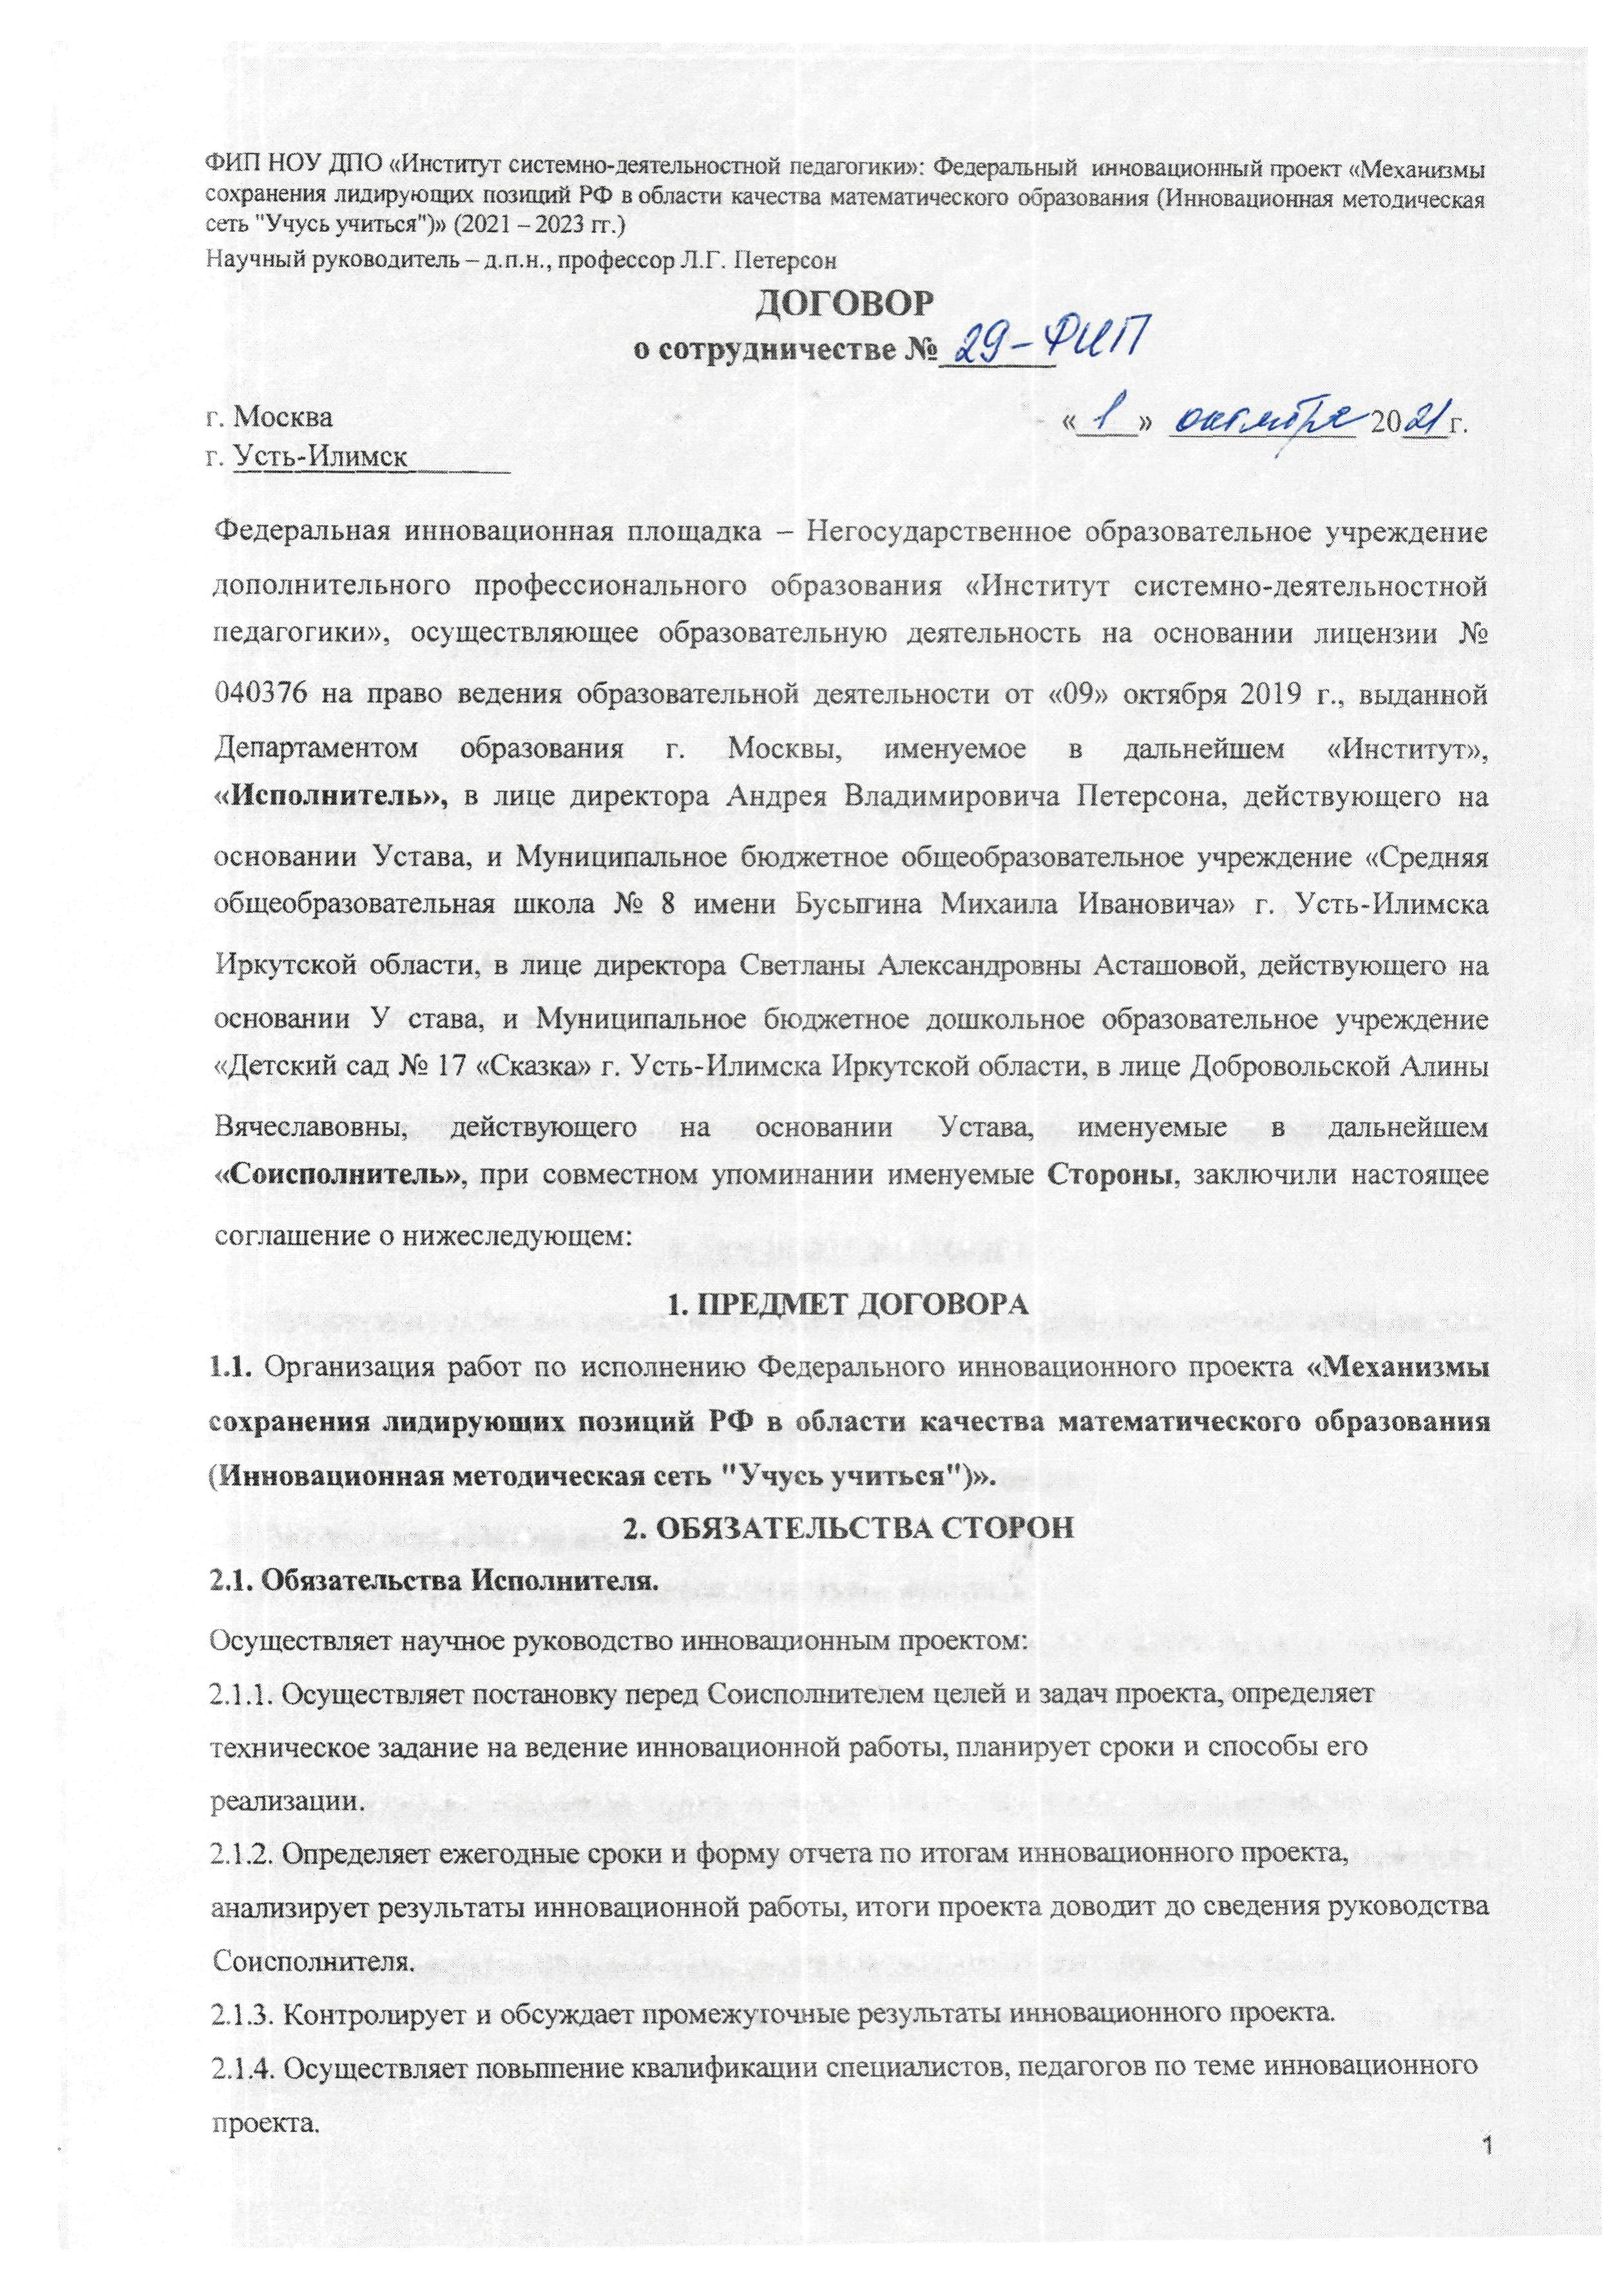 Договор о сотрудничестве № 29-ФИП от 01.10.2021 г. лист 1